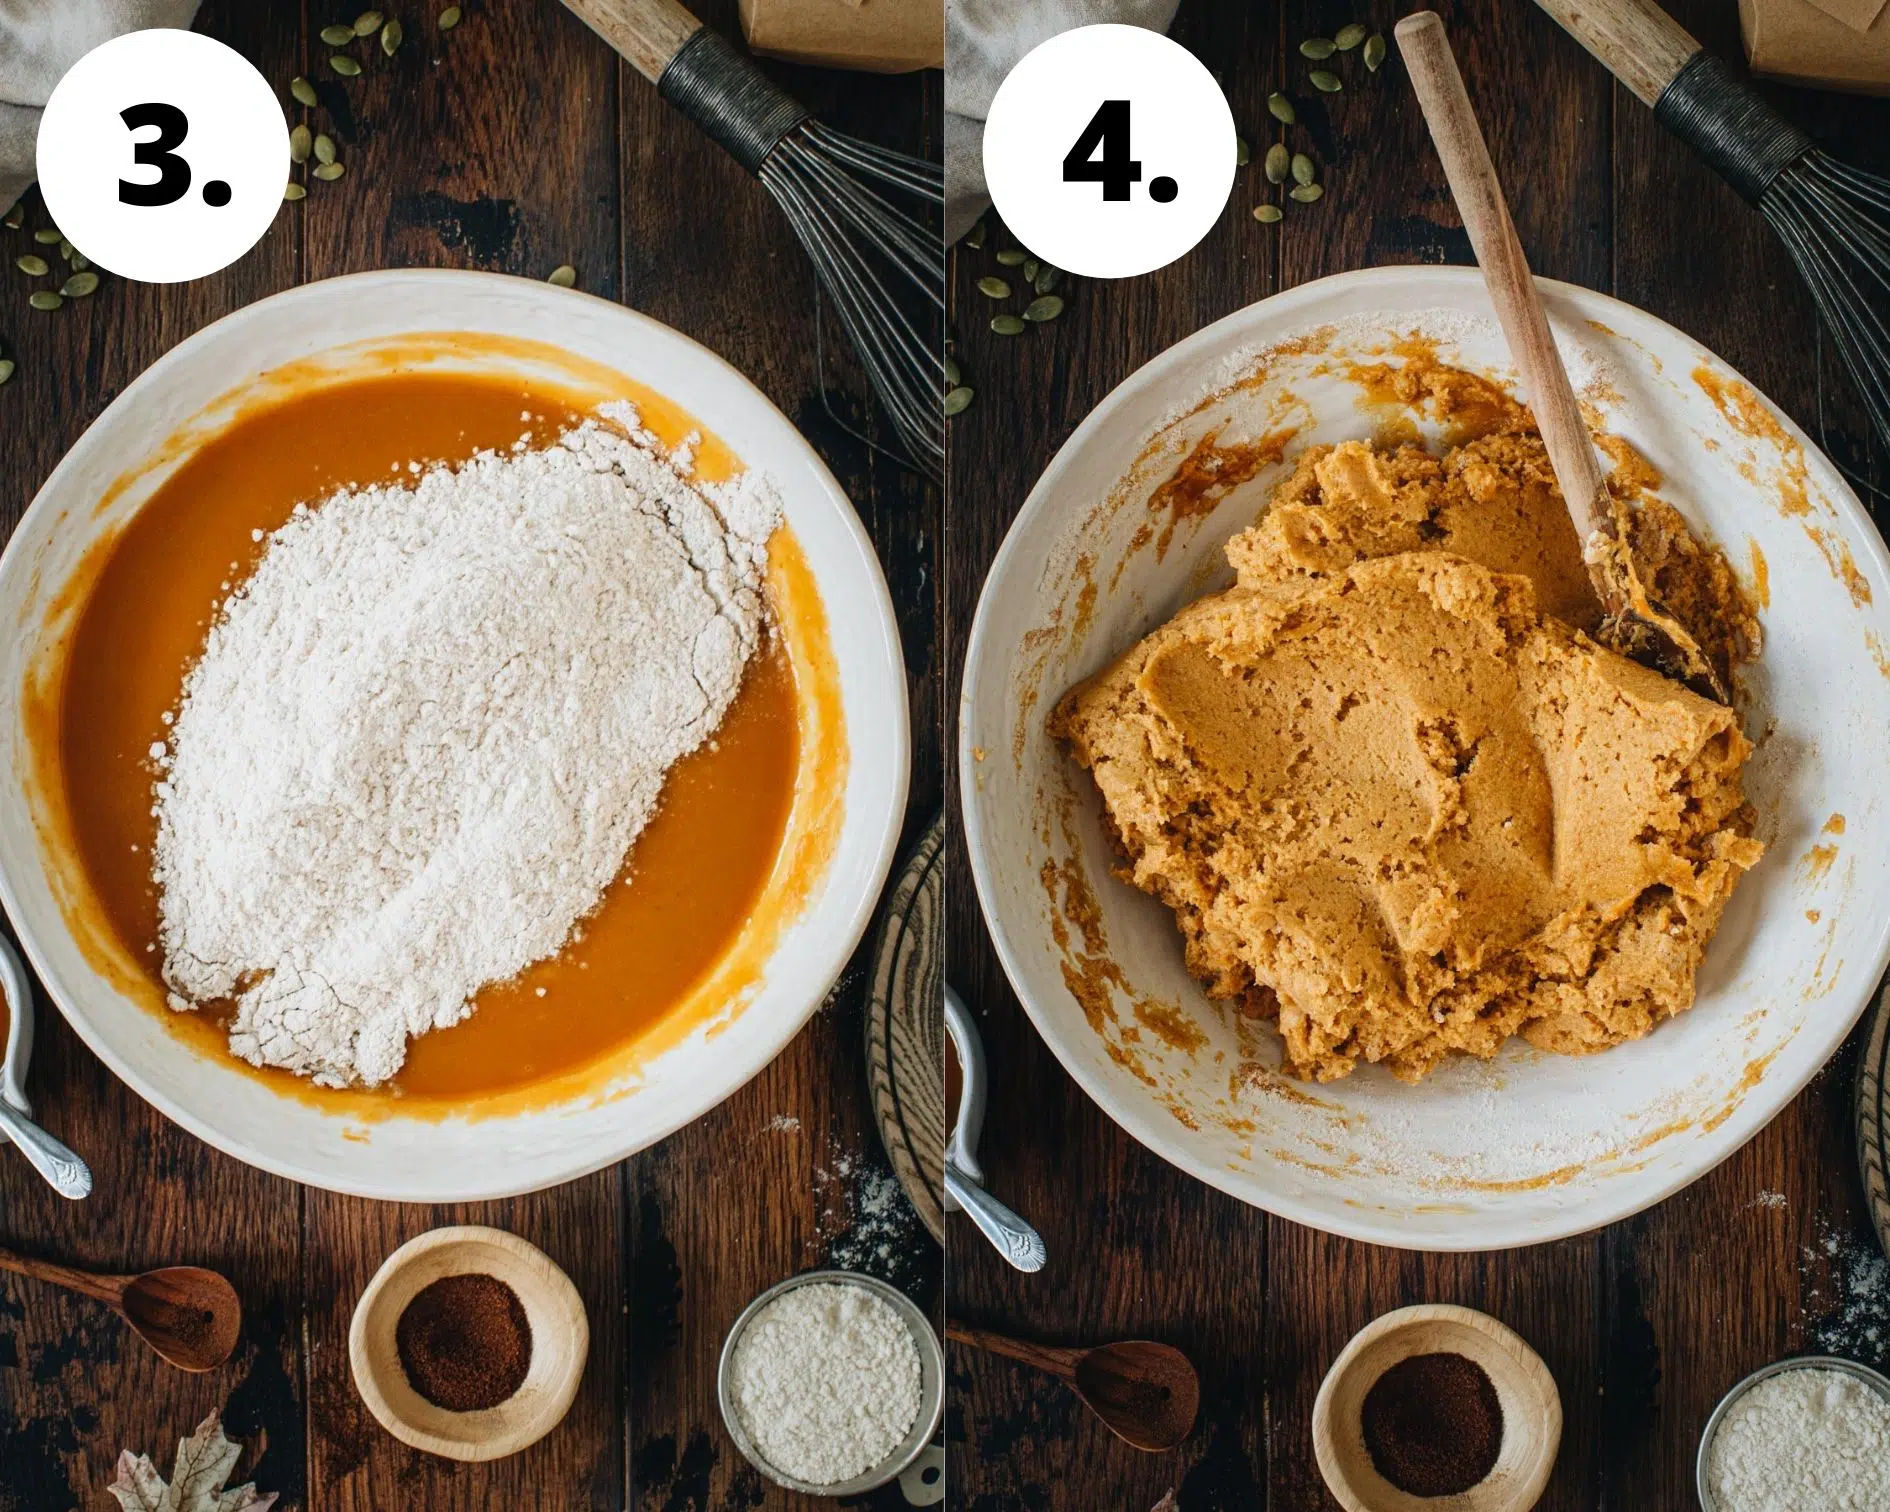 Vegan pumpkin muffins process steps 3 and 4.